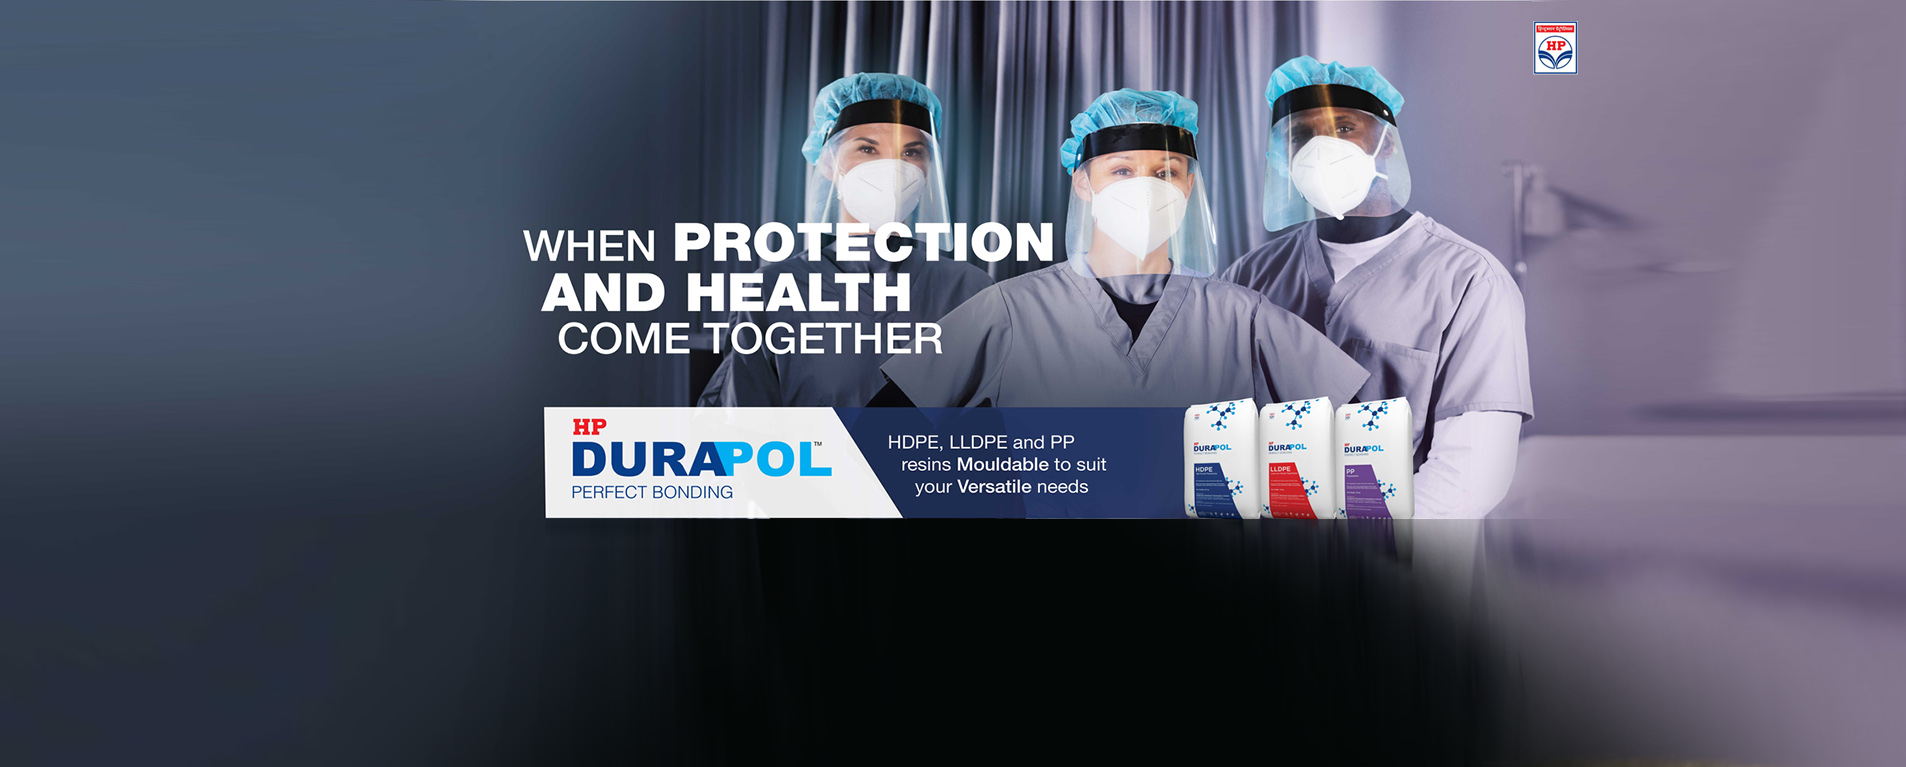 Durapol Brand Campaign - 2